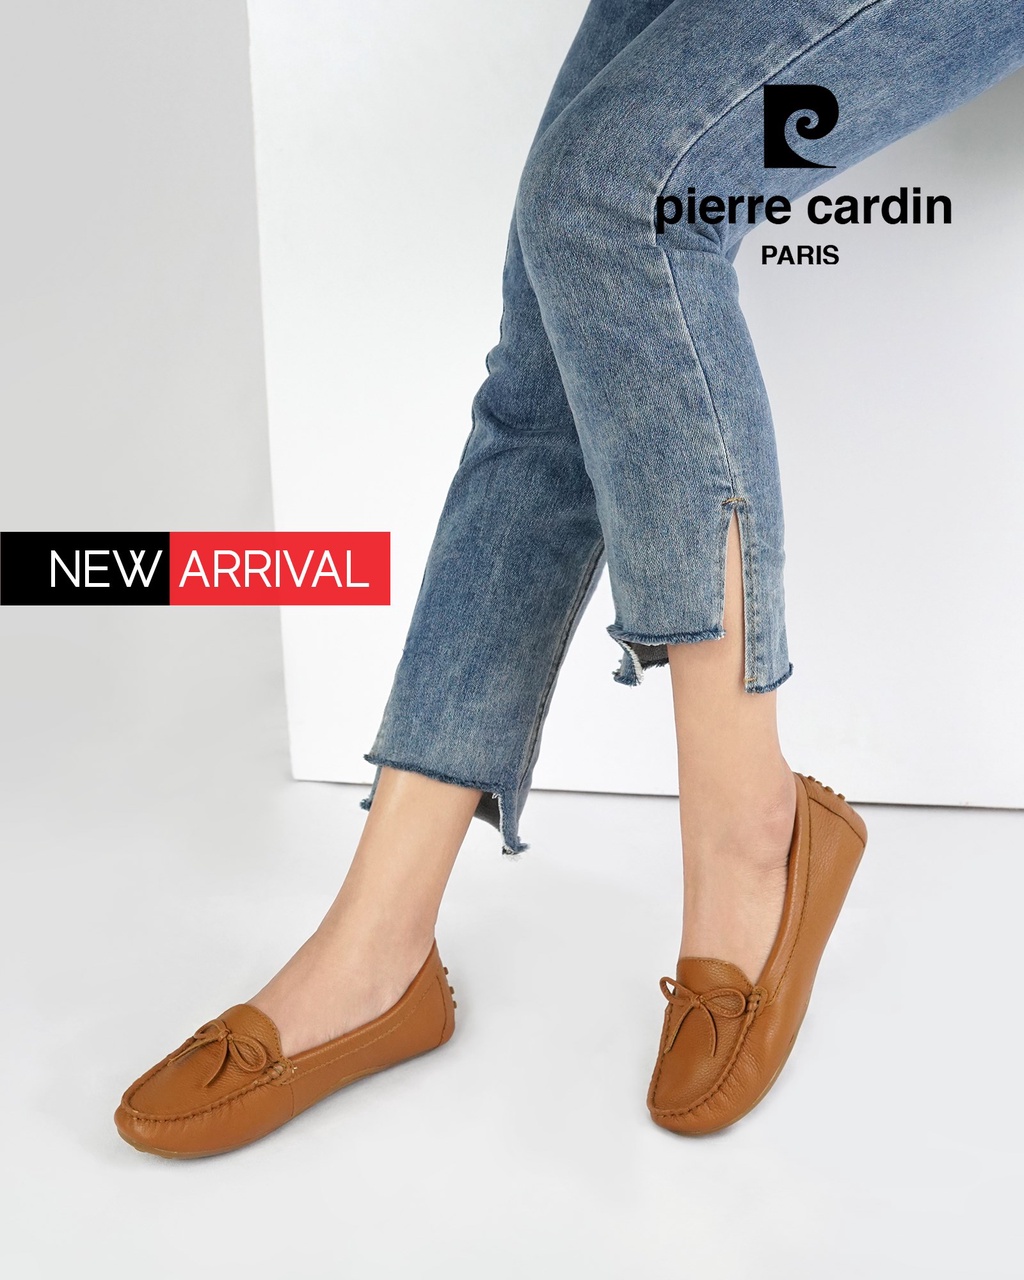 ลองดูภาพสินค้า Pierre Cardin รองเท้าผู้หญิง รองเท้าส้นแบน รองเท้าอ็อกซ์ฟอร์ดและรองเท้าพันข้อ นุ่ม ผลิตจากหนังแท้ สีน้ำตาล รุ่น 50AC112